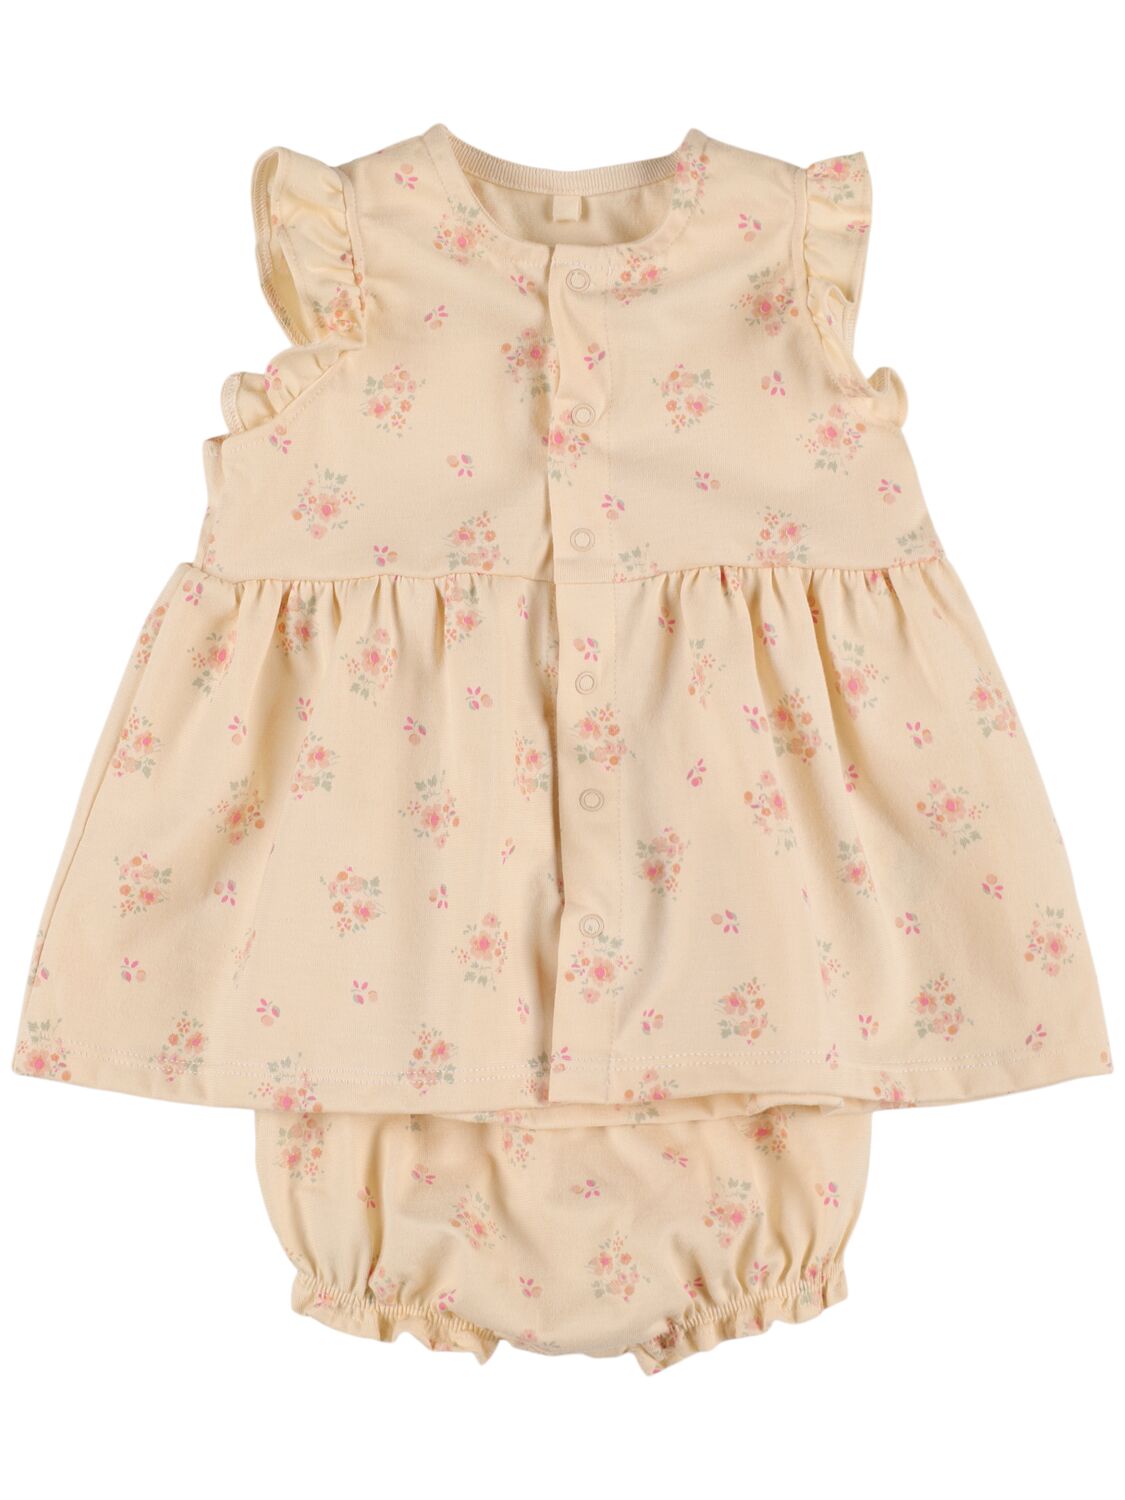 Petit Bateau Babies' Cotton Dress & Diaper Cover In Neutral